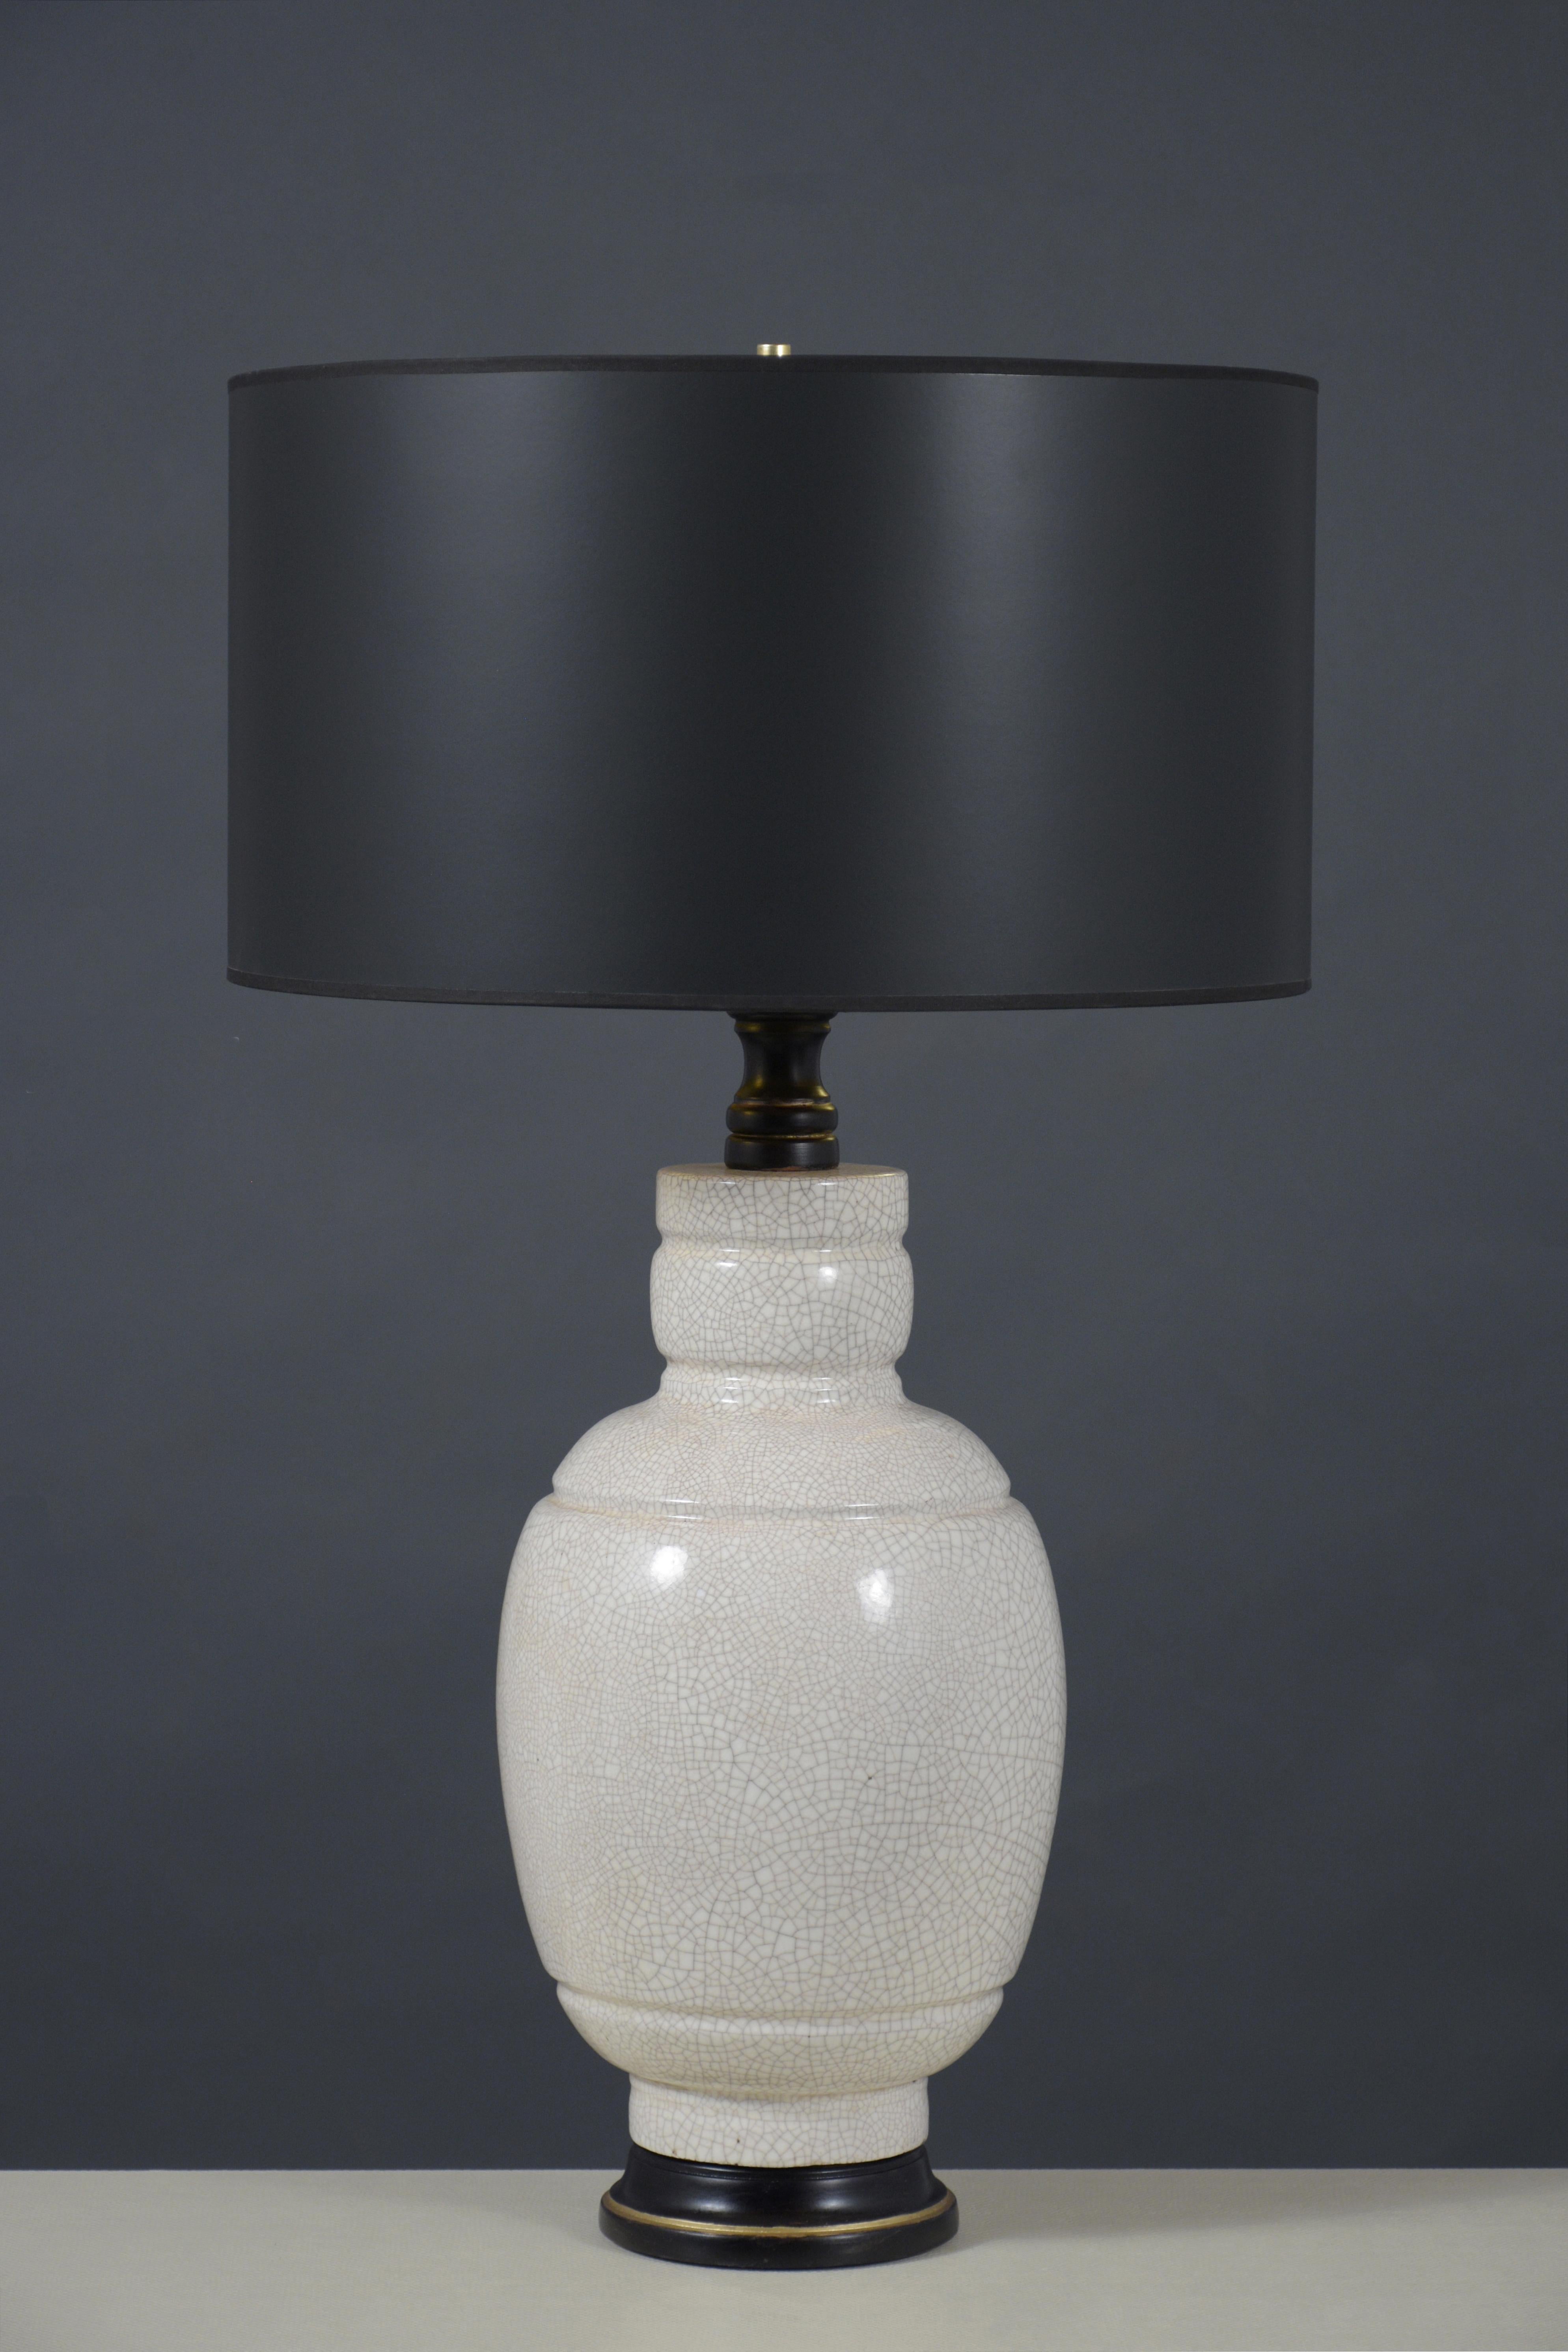 Entdecken Sie die Eleganz der 1960er Jahre mit unseren beiden Tischlampen aus Keramik neu. Jedes Stück wurde fachmännisch restauriert, um den Charme der alten Zeit mit moderner Raffinesse zu verbinden. Die aus hochwertiger Keramik gefertigten Lampen